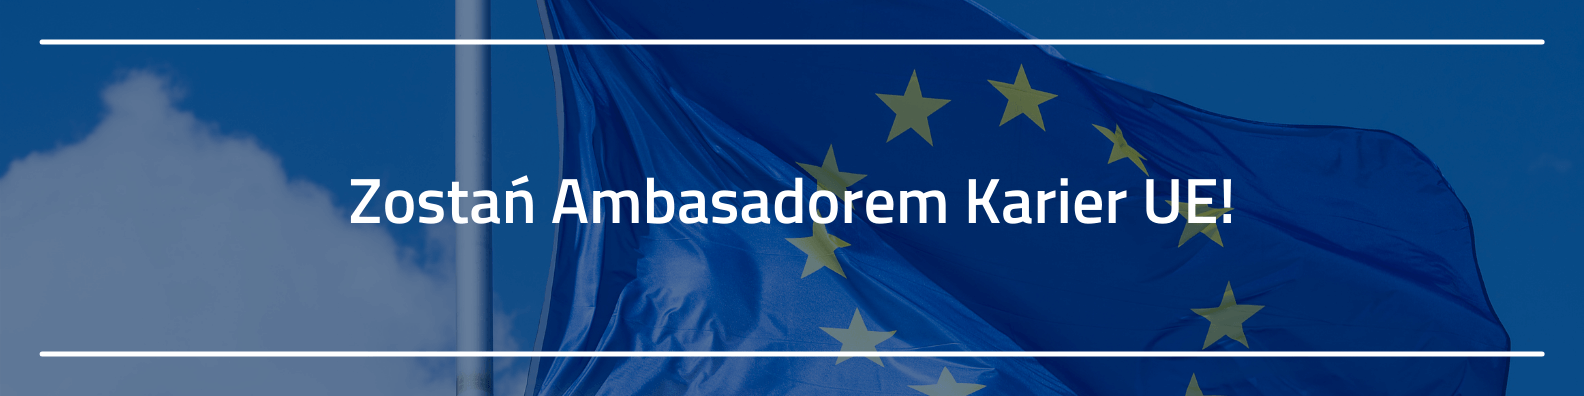 Flaga Unii Europejskiej, a na jej tle napis "Zostań Ambasadorem Karier UE"